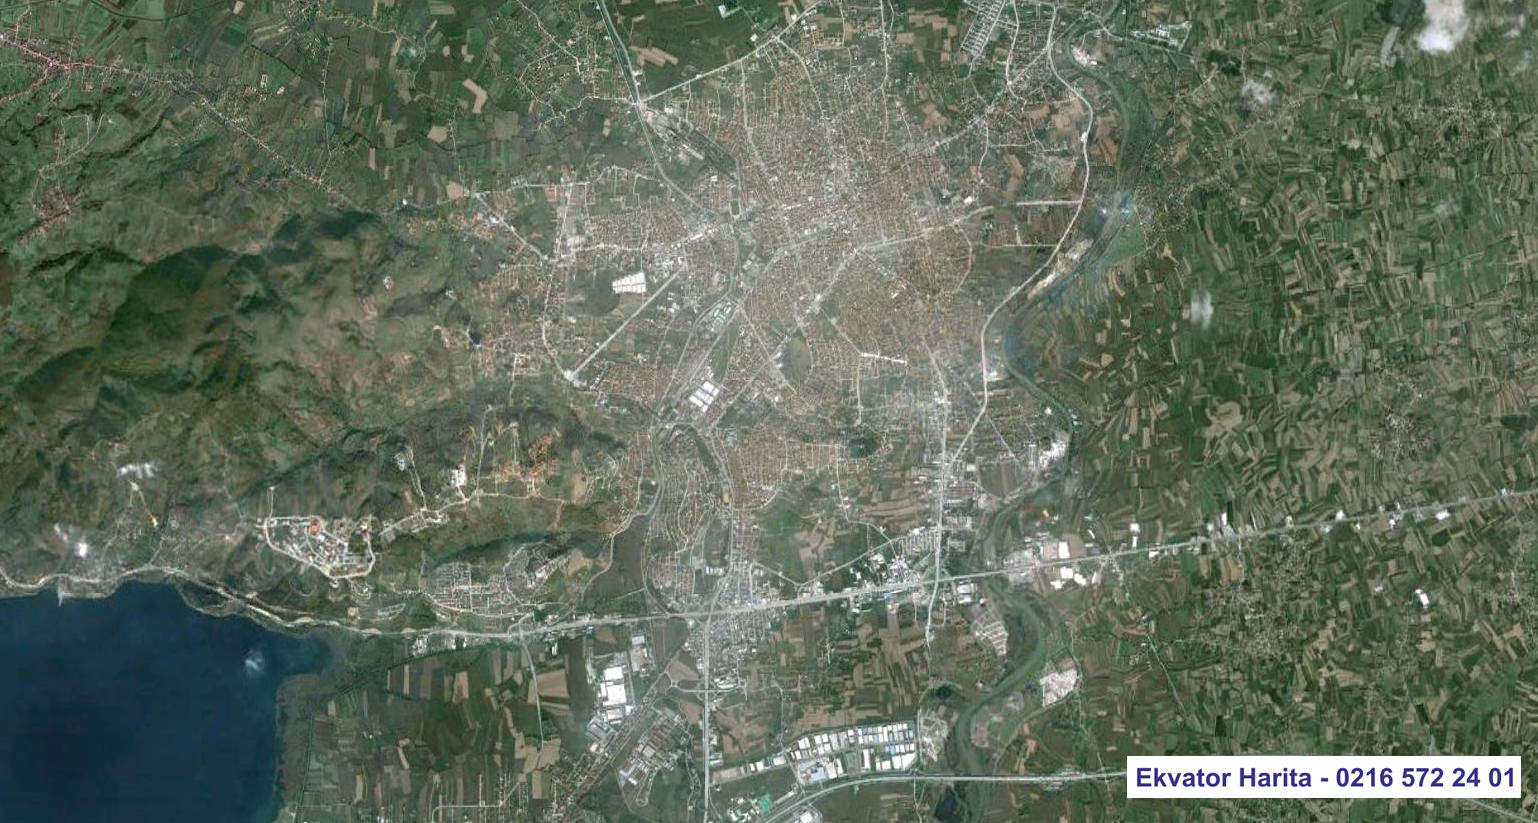 Sakarya Uydu Haritası Örnek Fotoğrafı